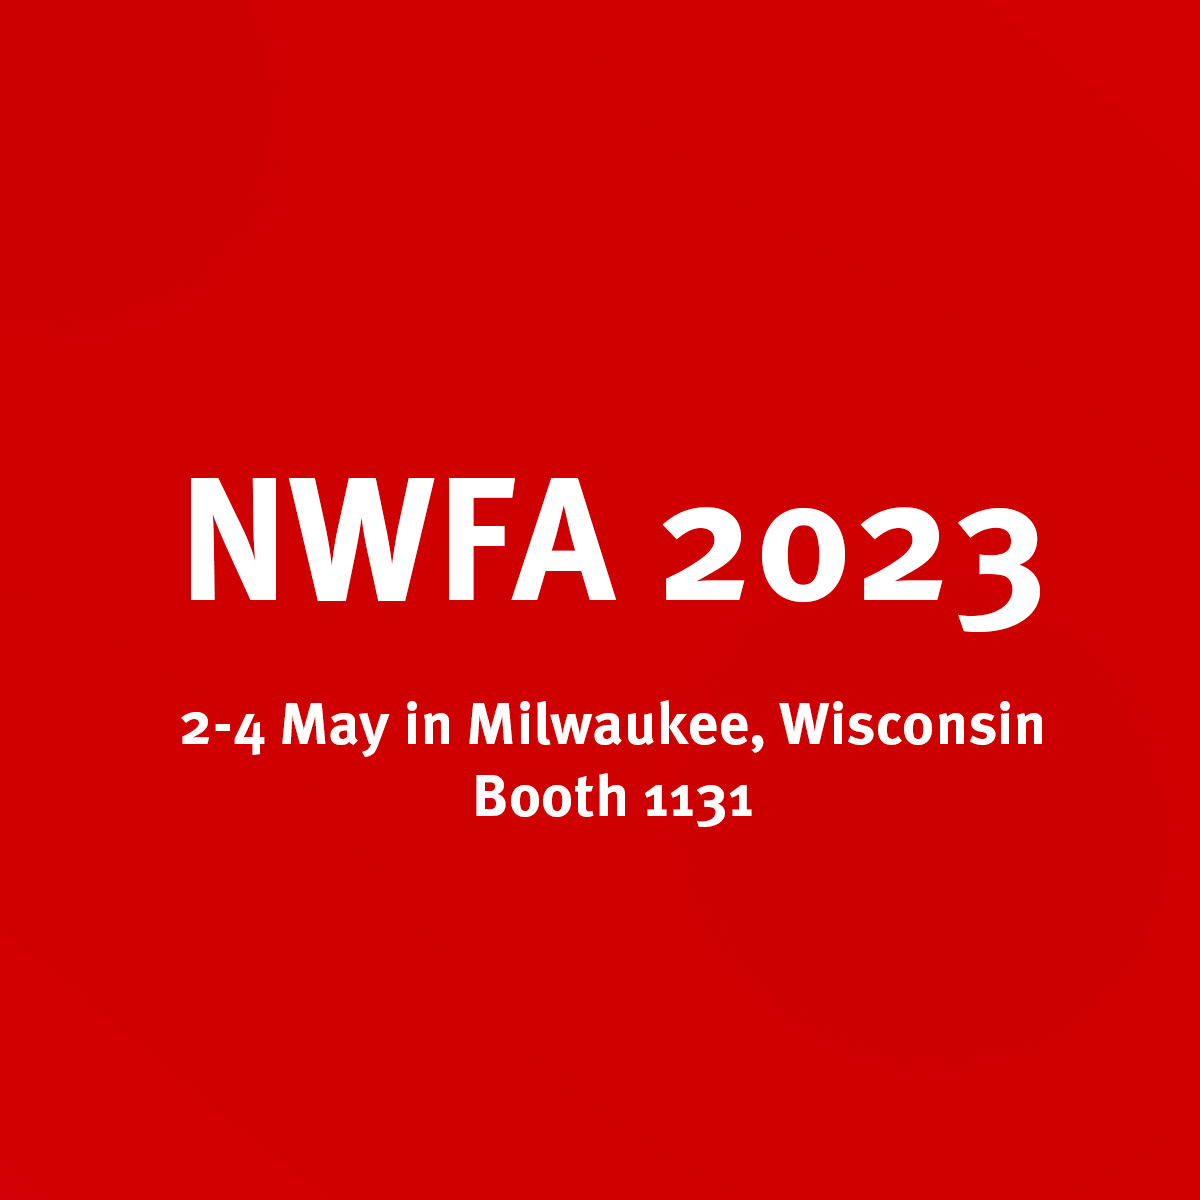 nwfa 2023